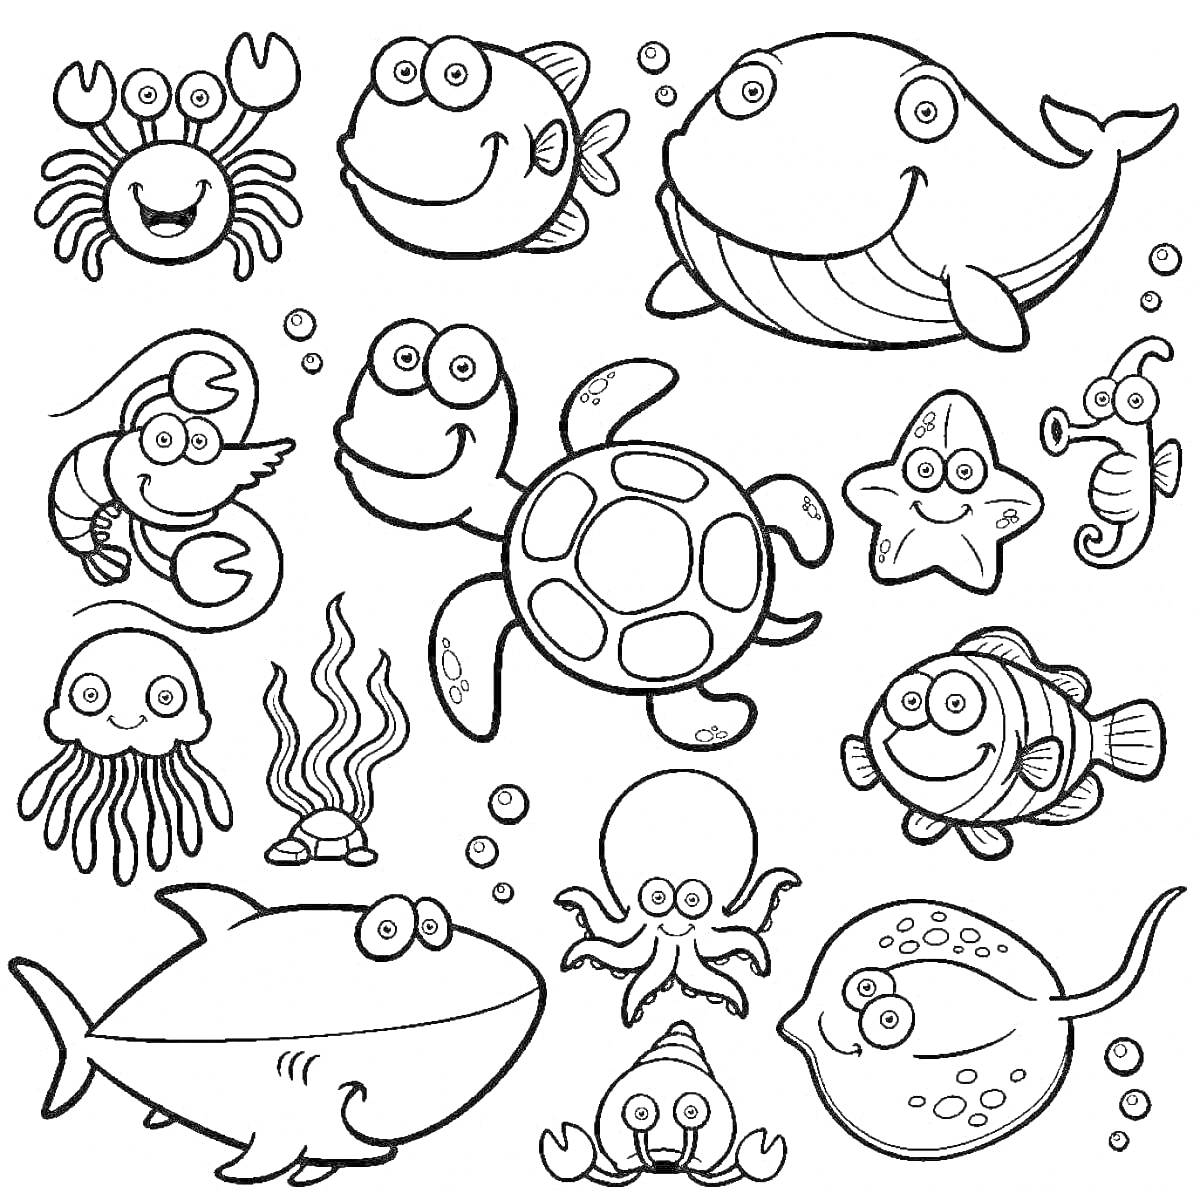 Раскраска Морские обитатели: краб, рыба, кит, лобстер, черепаха, морская звезда, морской конек, медуза, водоросли, осьминог, акула, скат